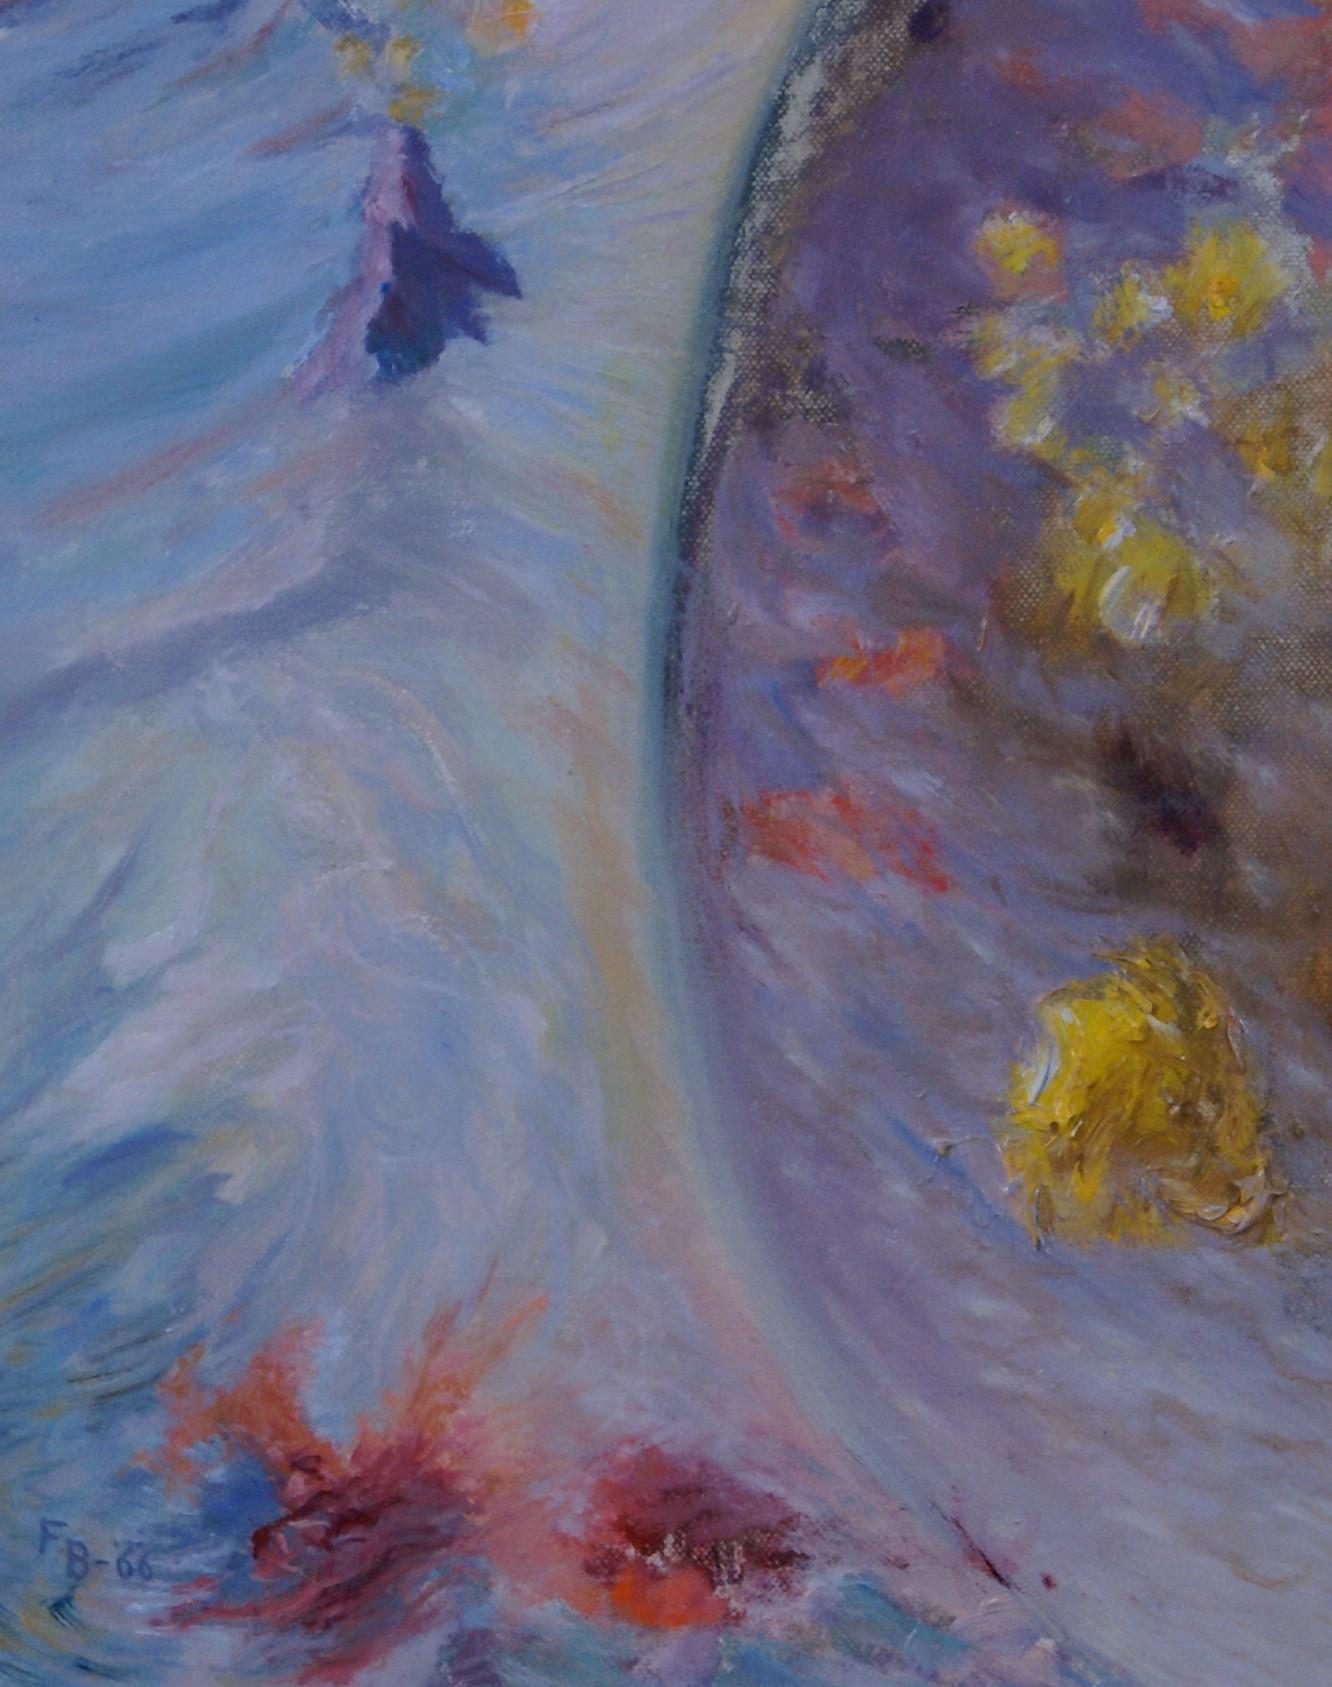 Représentation impressionniste de Freeman Baldridge de l'impact d'une vague sur la terre, avec un tourbillon de fleurs colorées et un oiseau au-dessus. L'huile sur toile mesure 15 15/16 x 12 ; les dimensions du cadre mesurent 22 1/8 x 18 x 1 1/2.